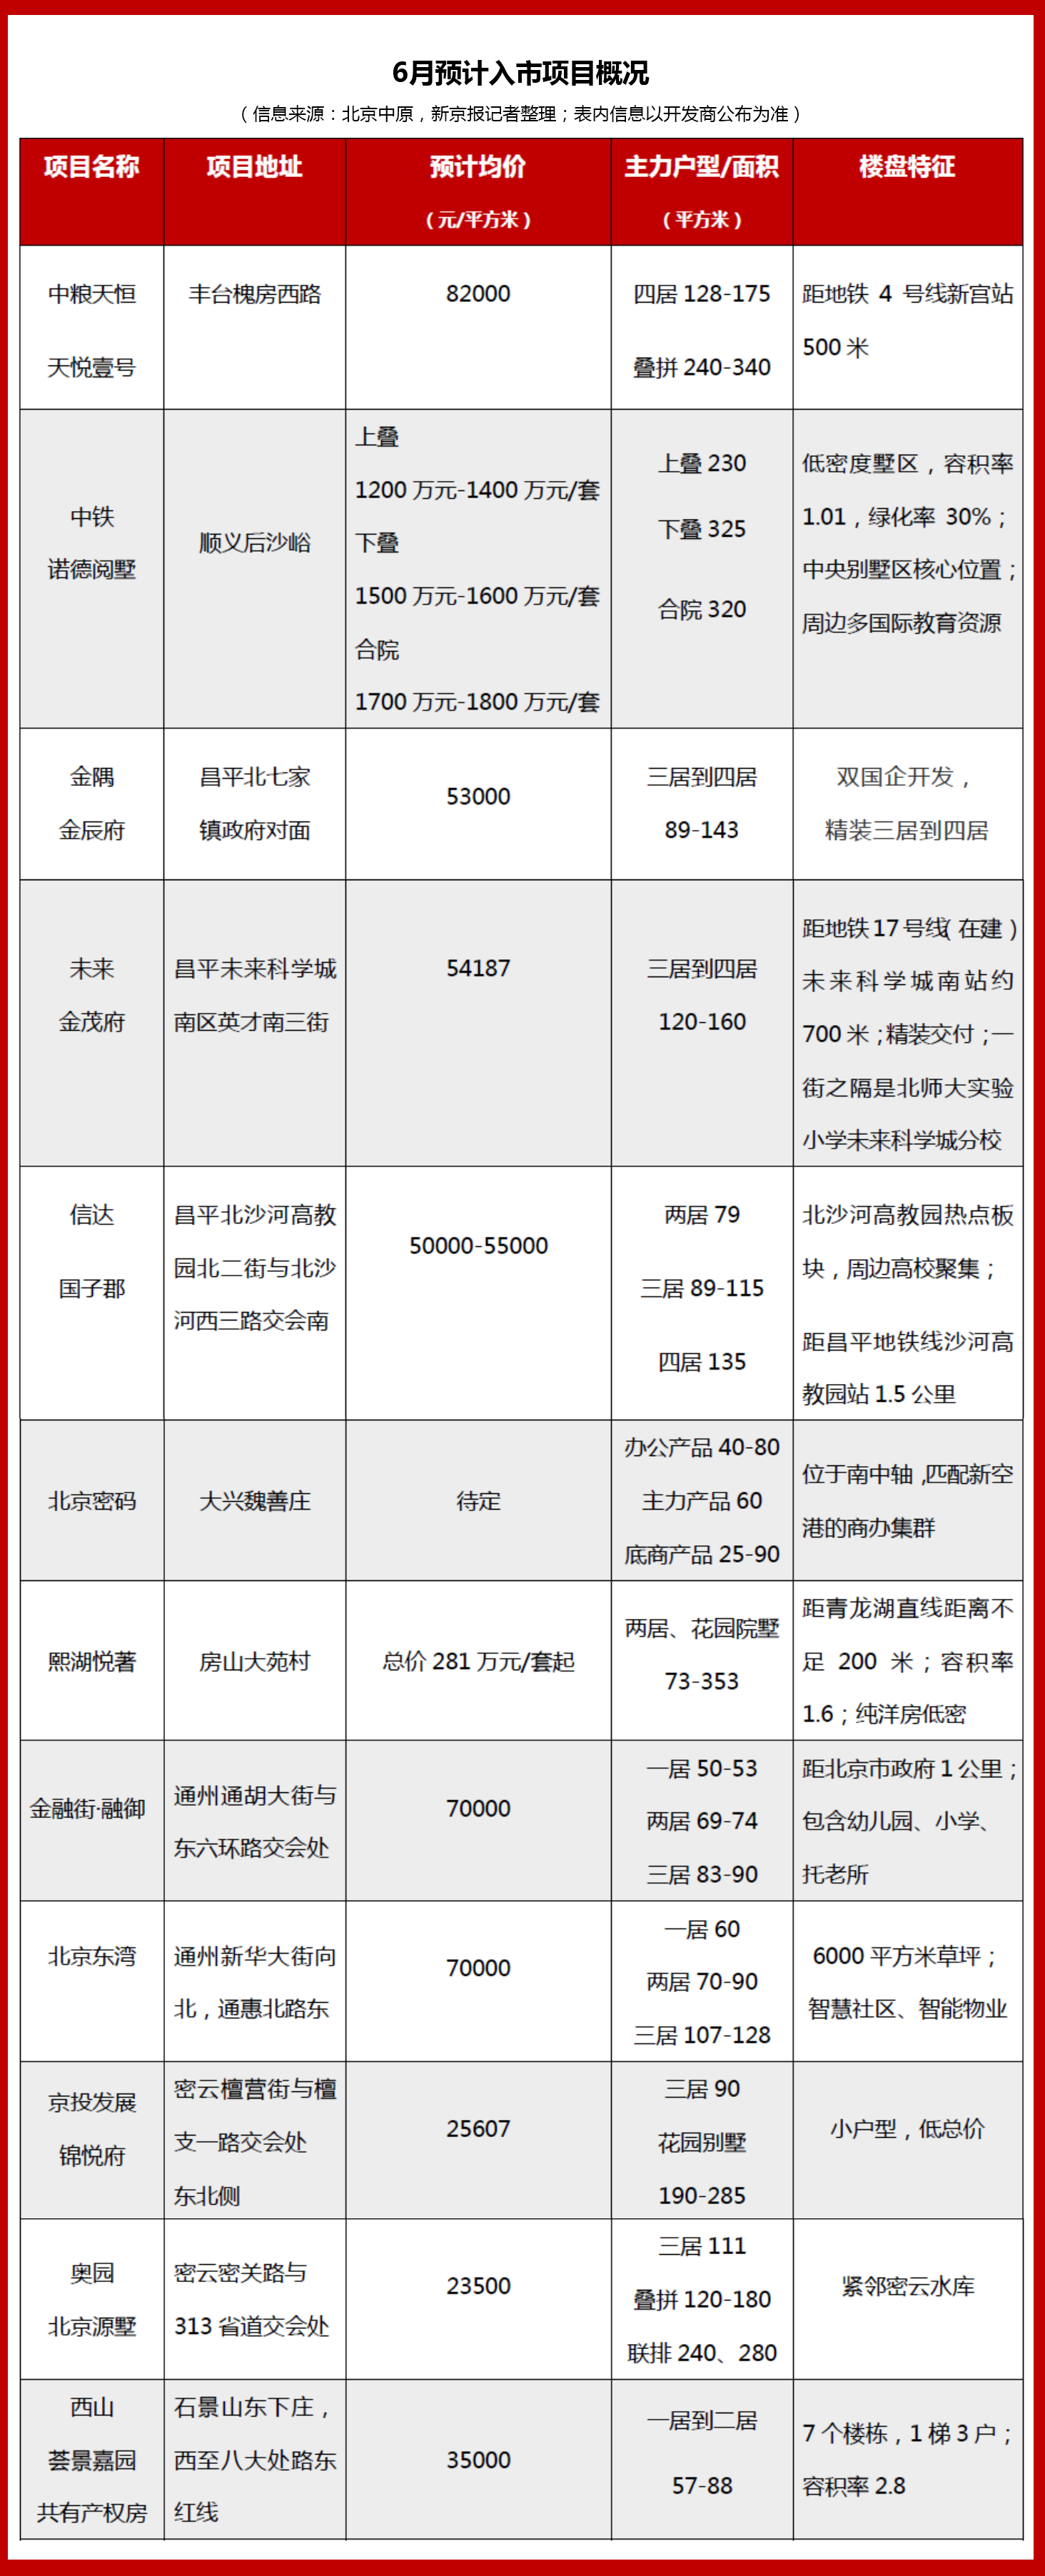 6月北京十余新盘预计入市 昌平和顺义成热区